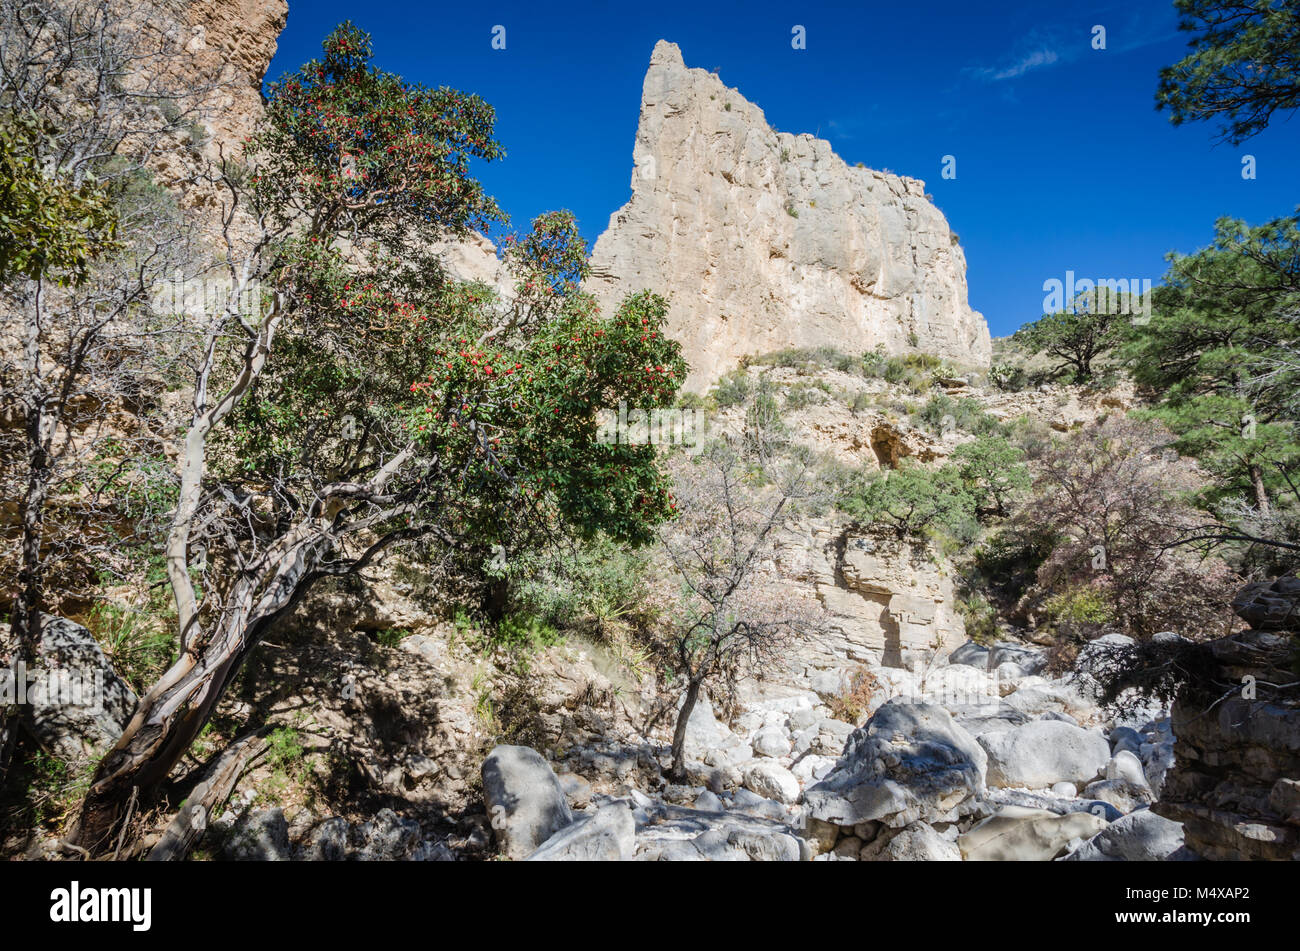 Arbre généalogique de Madrone et Devil's Hall rock formation à la basse campagne Chihuahan paysage désertique de Guadalupe Mountains National Park au Texas. Banque D'Images